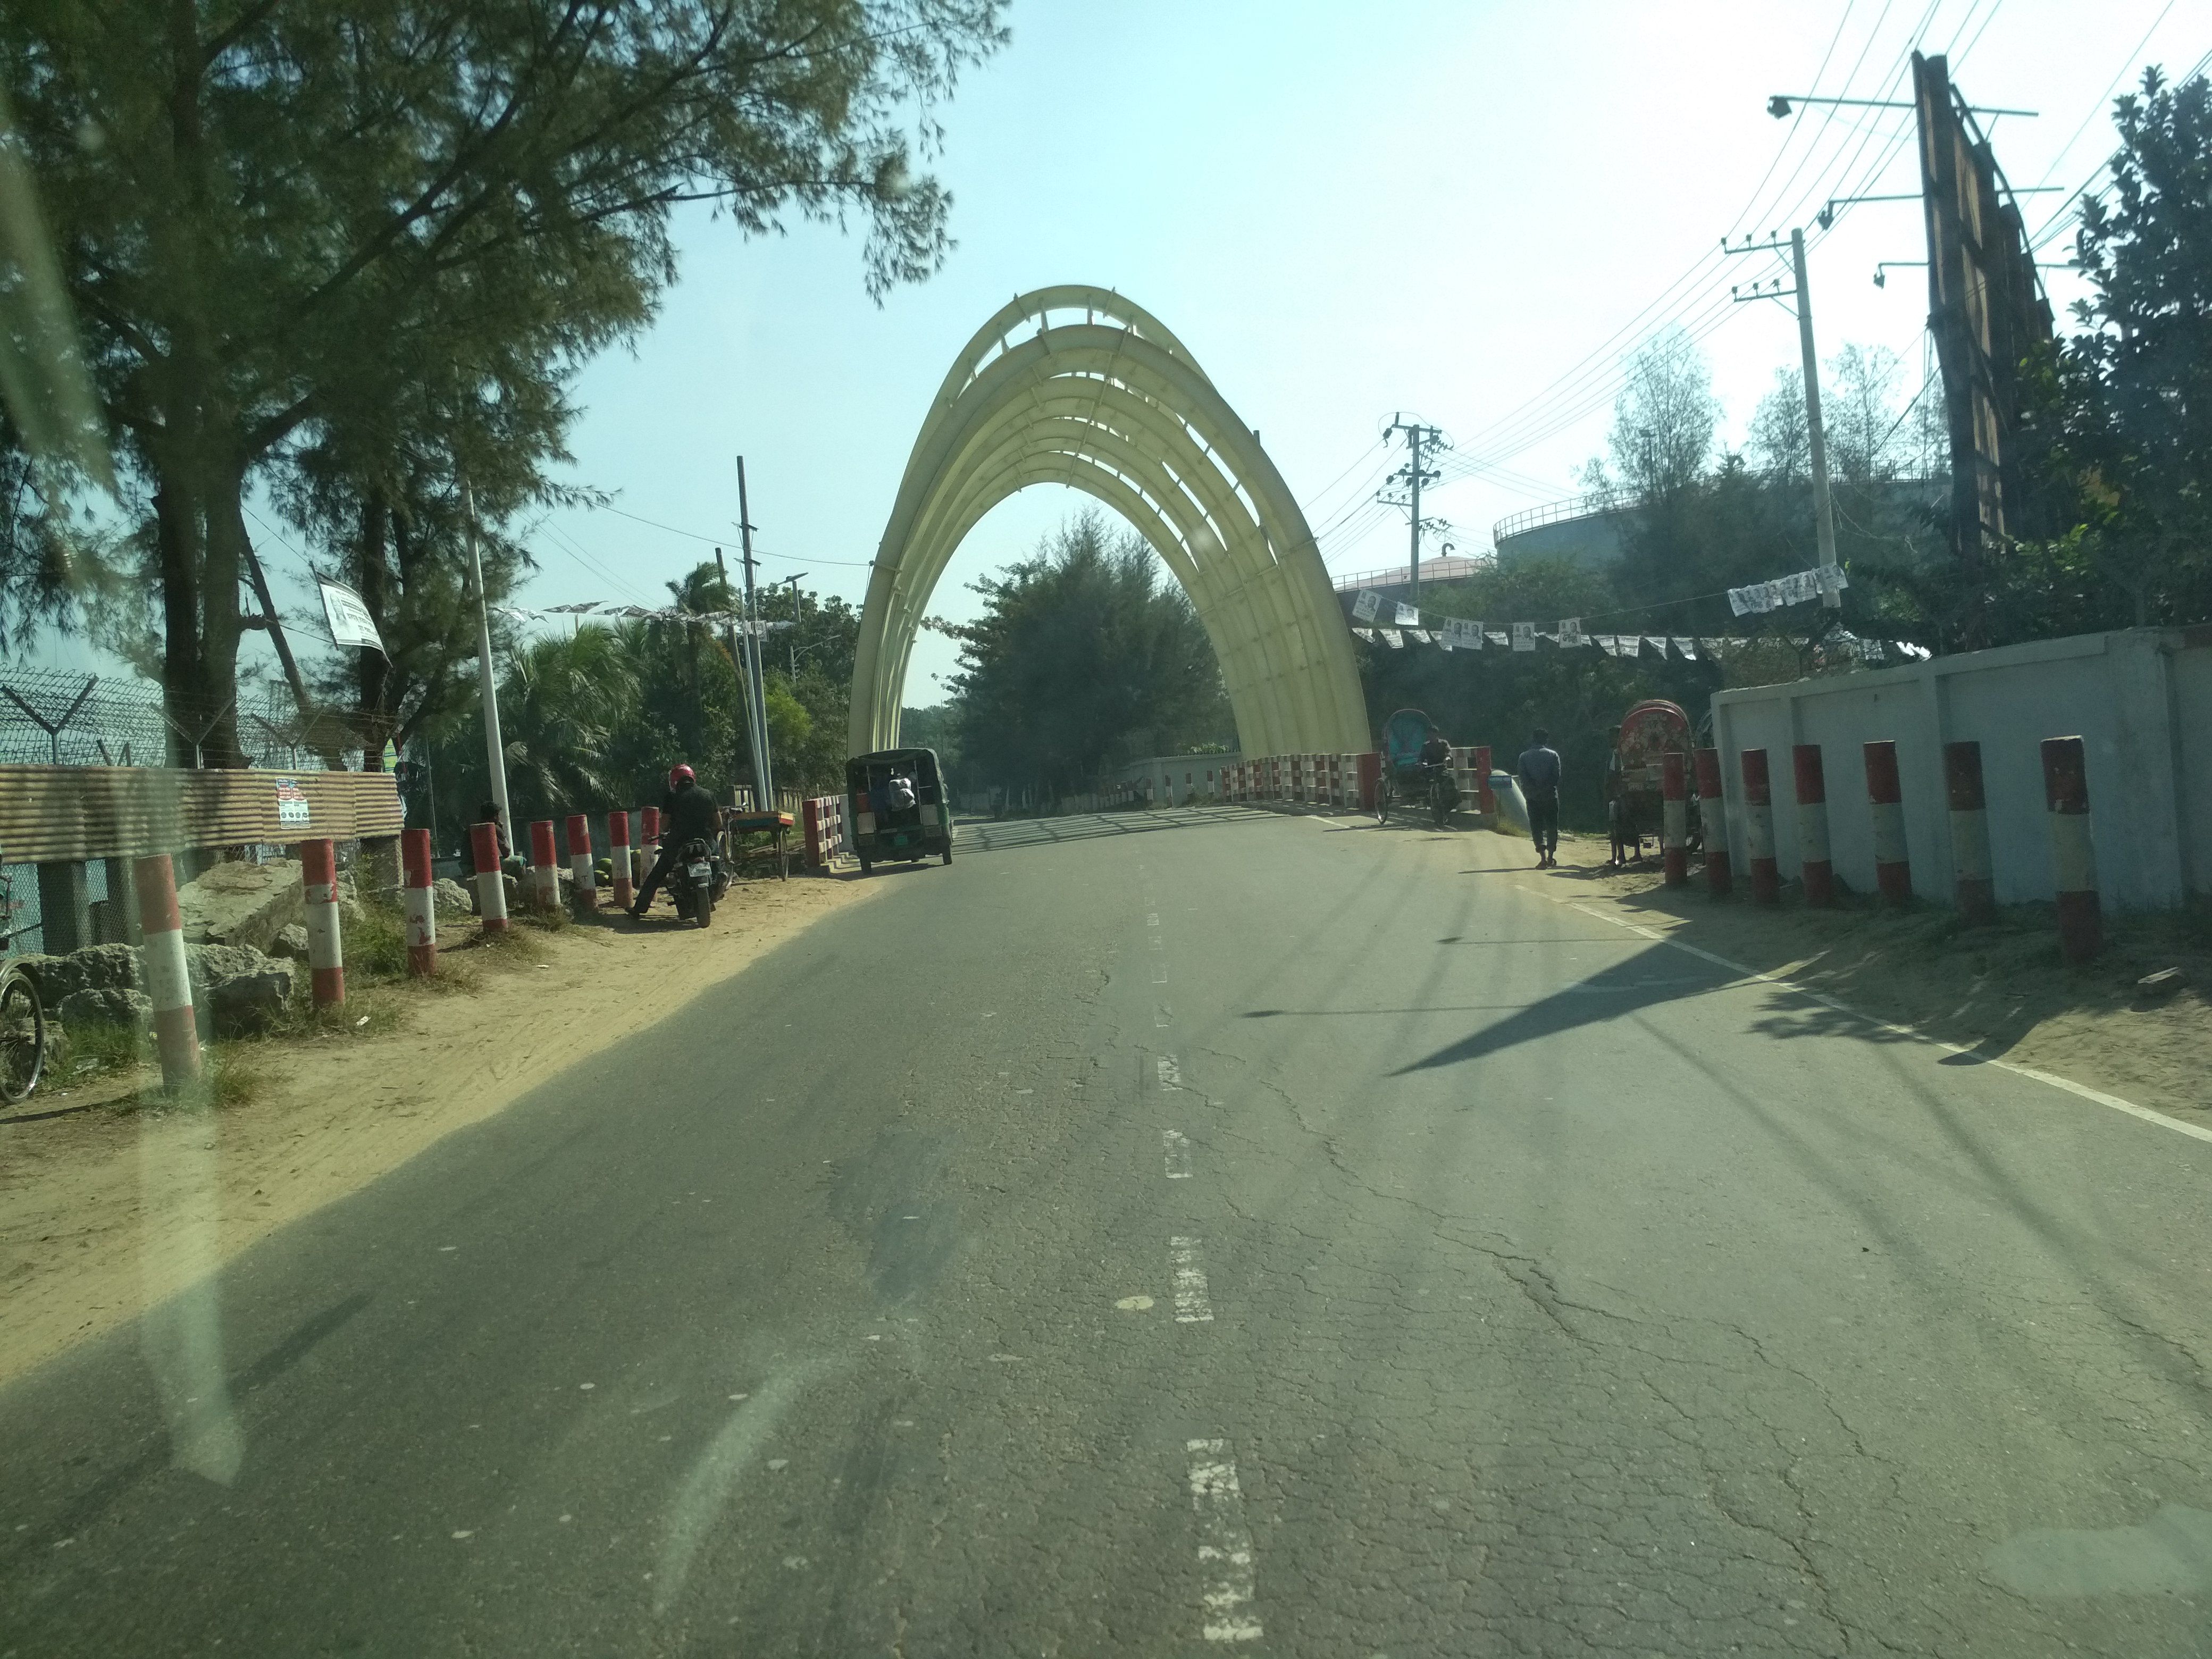 09 # ghat bridge on airport road.